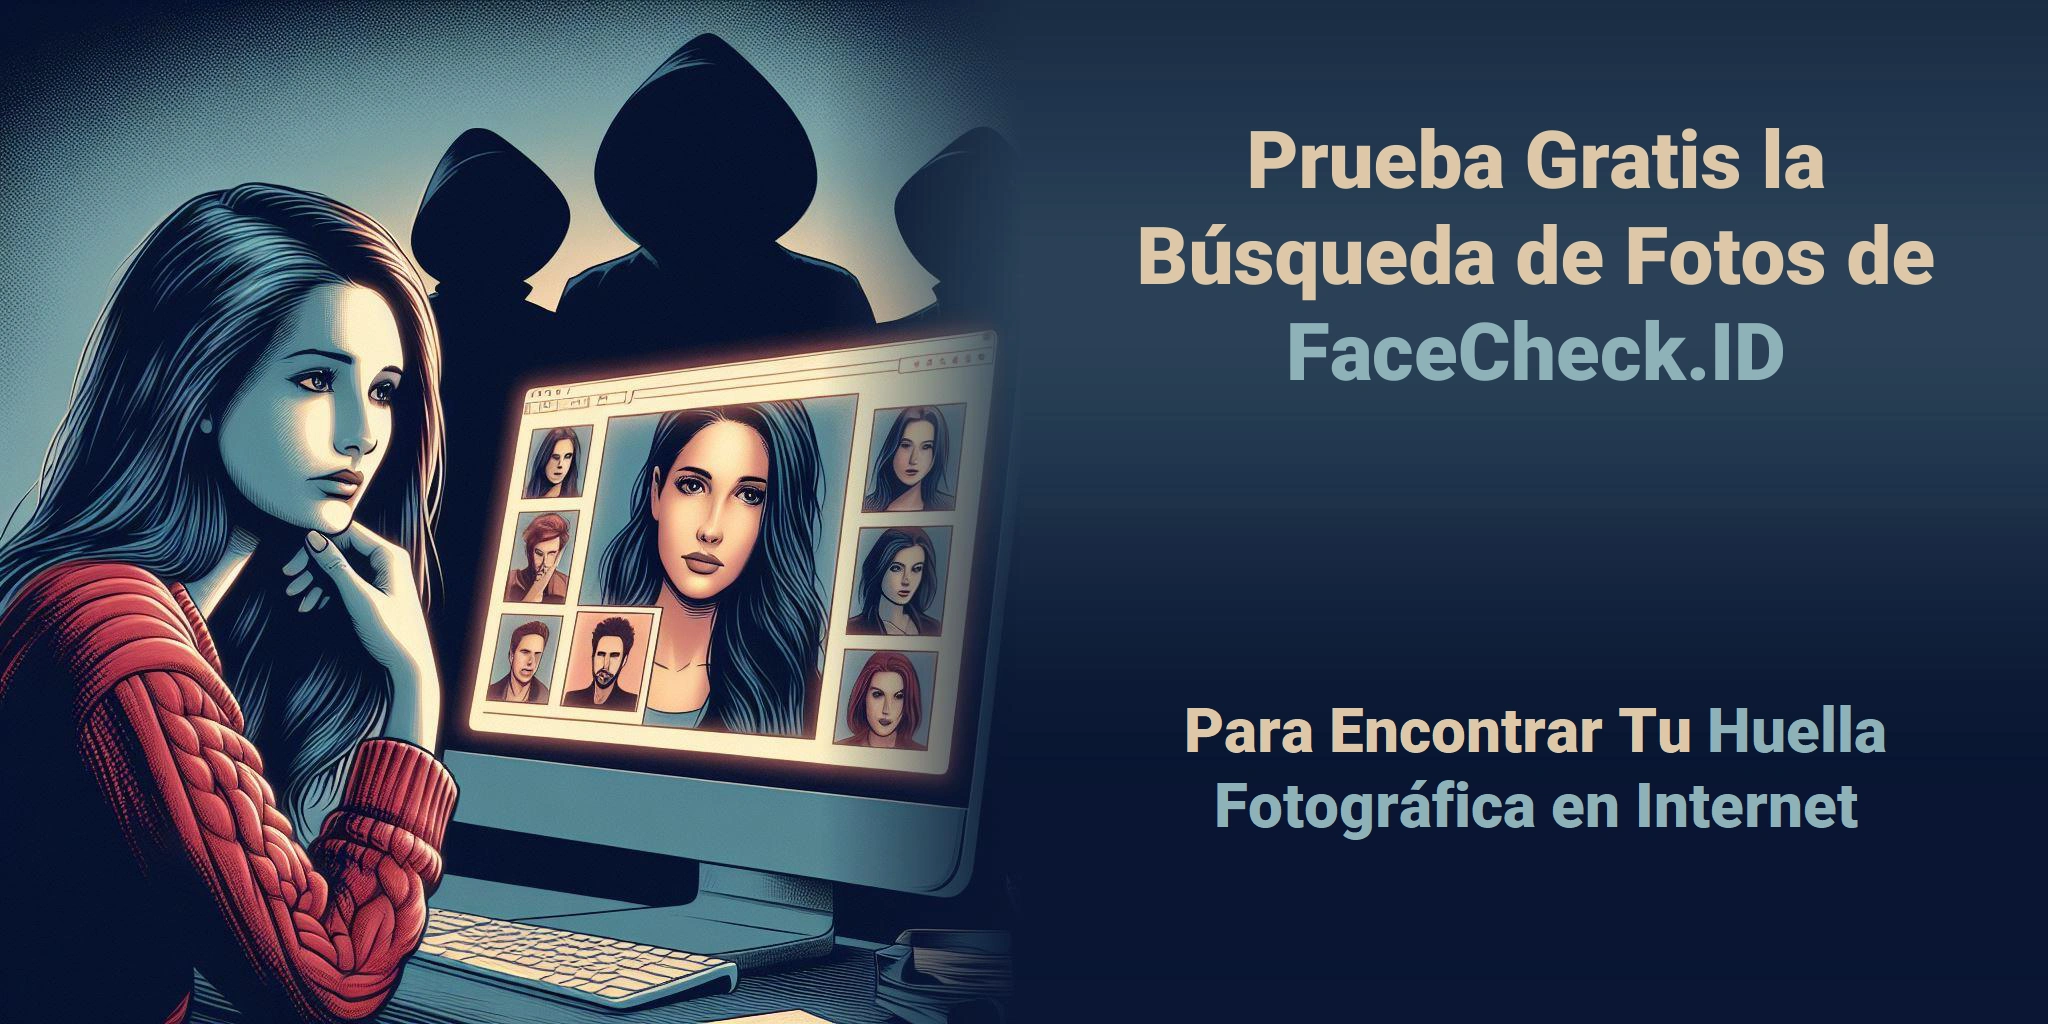 Prueba Gratis la Búsqueda de Fotos de FaceCheck.ID Para Encontrar Tu Huella Fotográfica en Internet